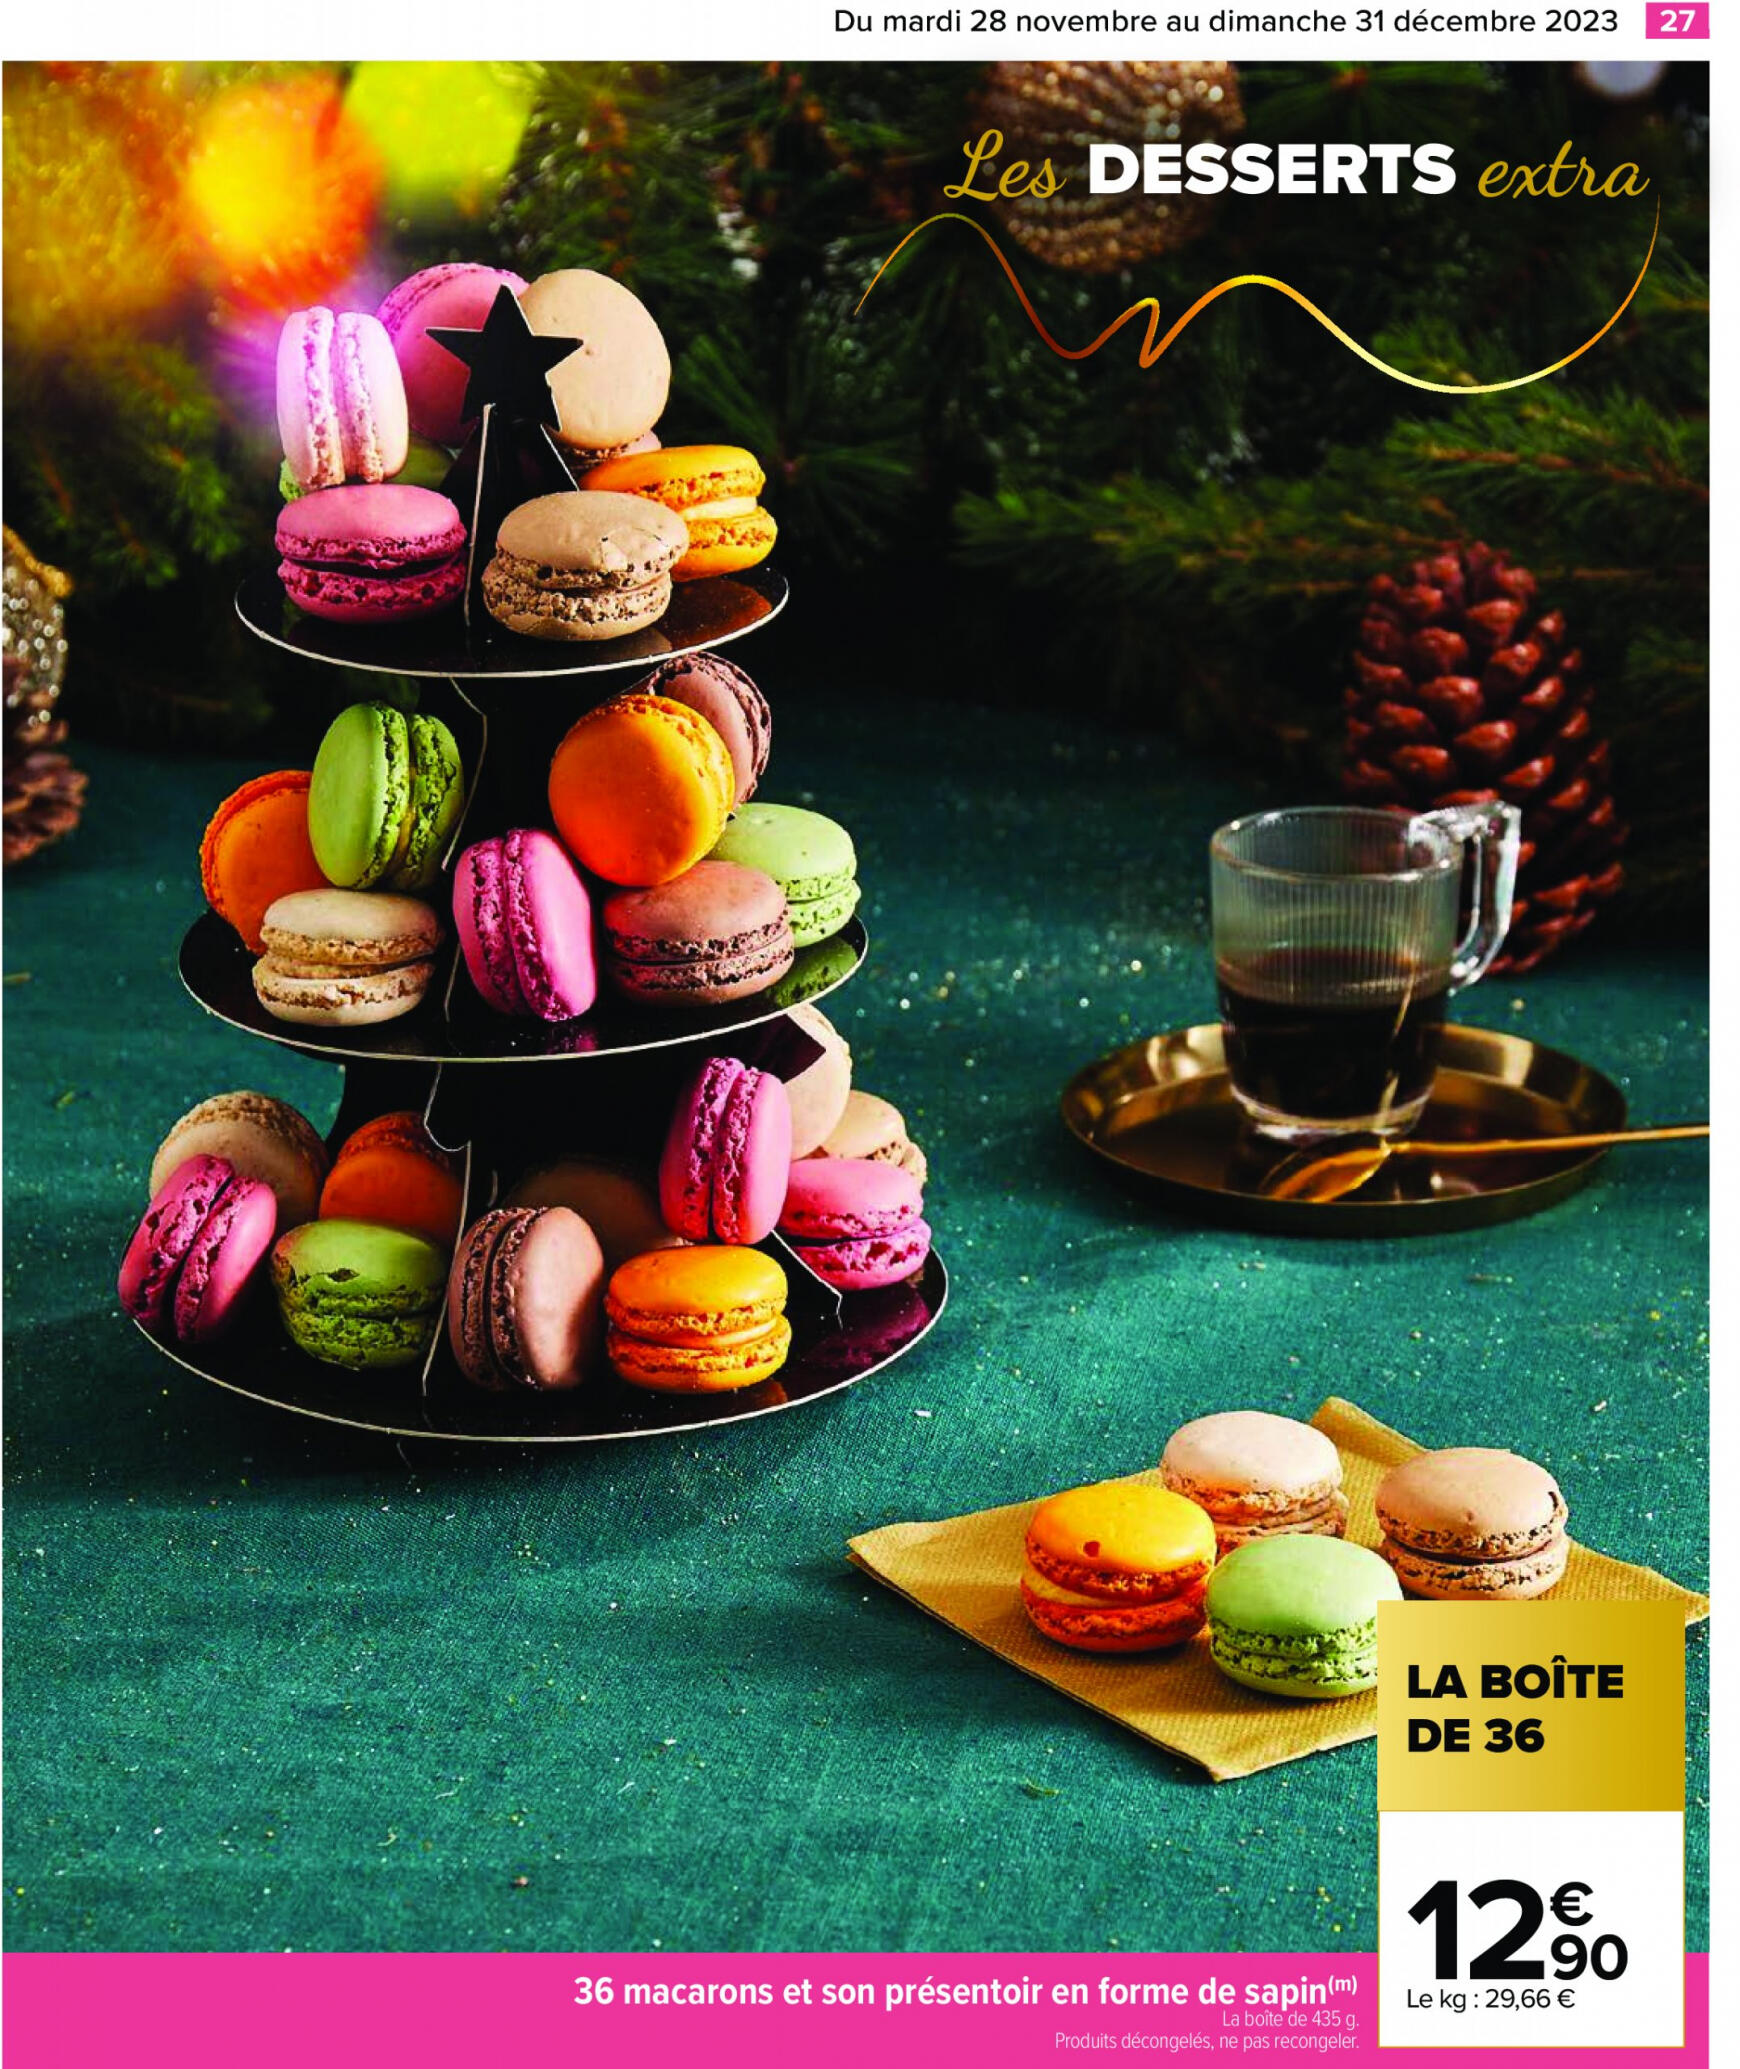 carrefour - Carrefour - Un Noël extra à prix ordinaire - GUIDE CULINAIRE valable à partir de 28.11.2023 - page: 29